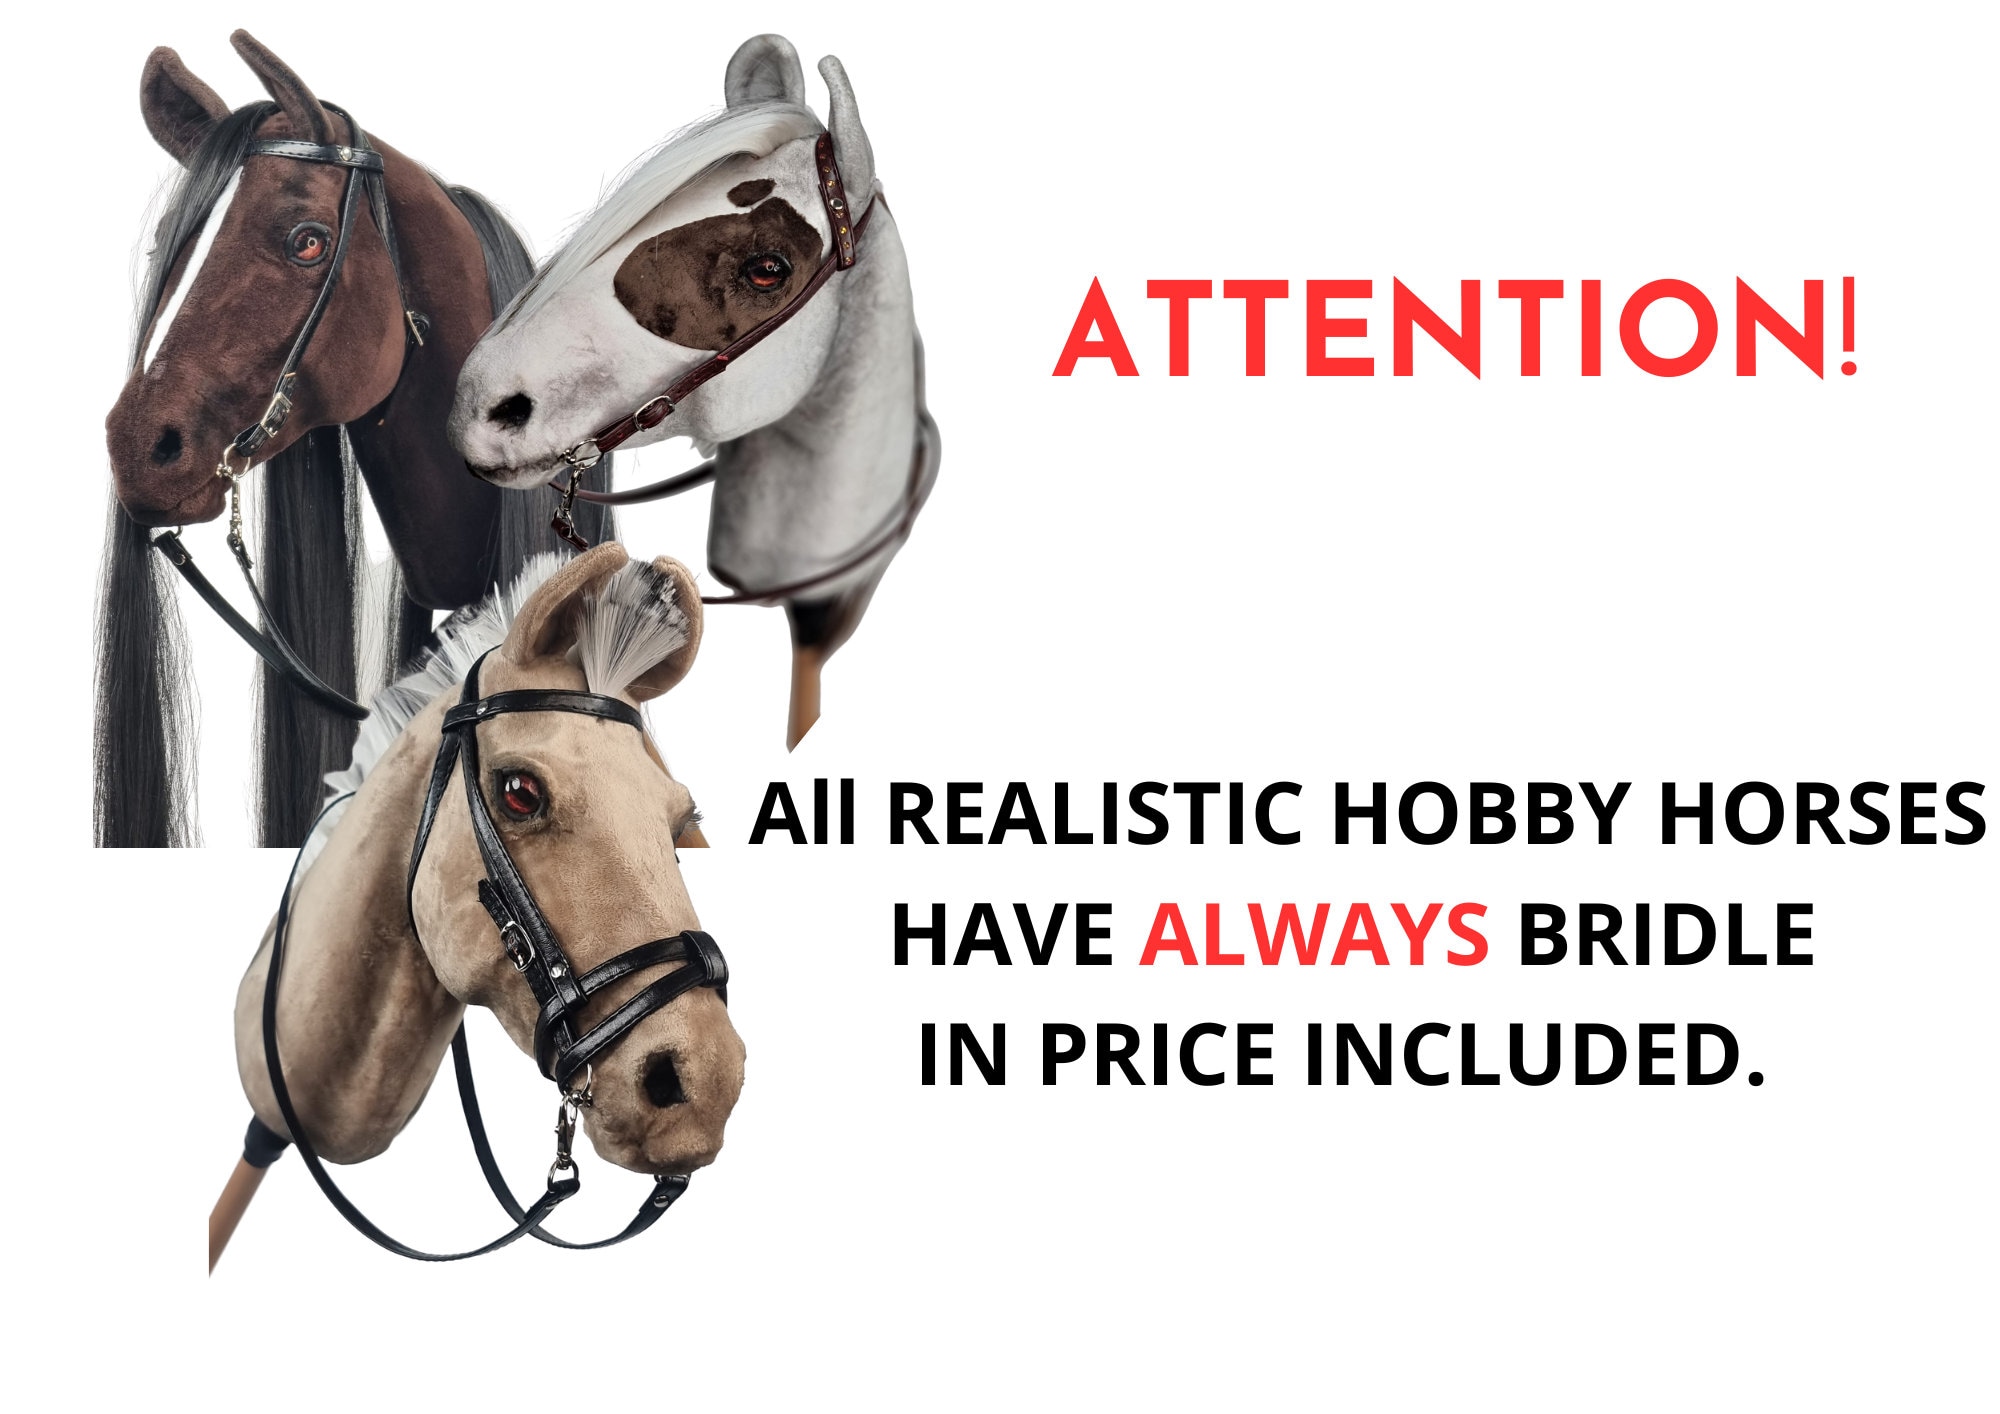 Western and Company hobbyhorse